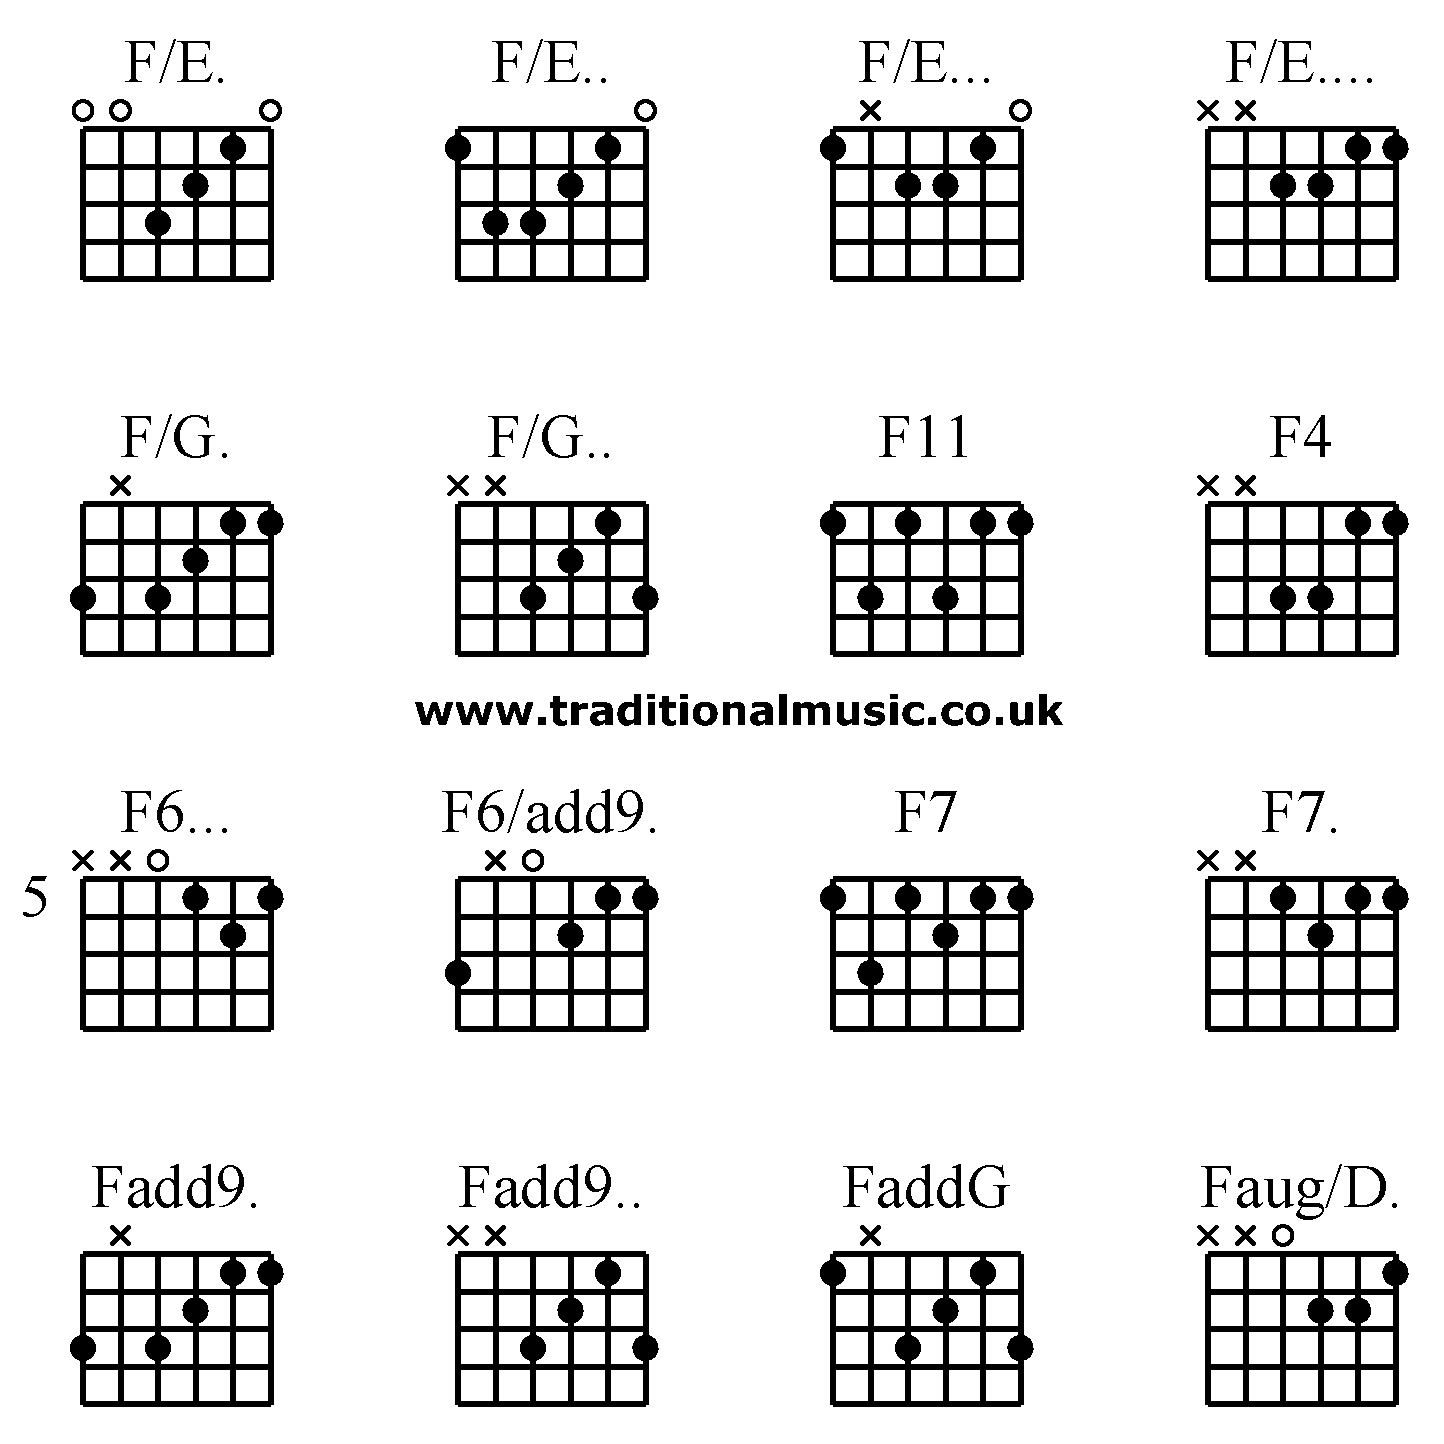 Advanced guitar chords:F/E. F/E.. F/E... F/E.... F/G. F/G.. F11 F4 F6... F6/add9. F7 F7. Fadd9. Fadd9.. FaddG Faug/D.